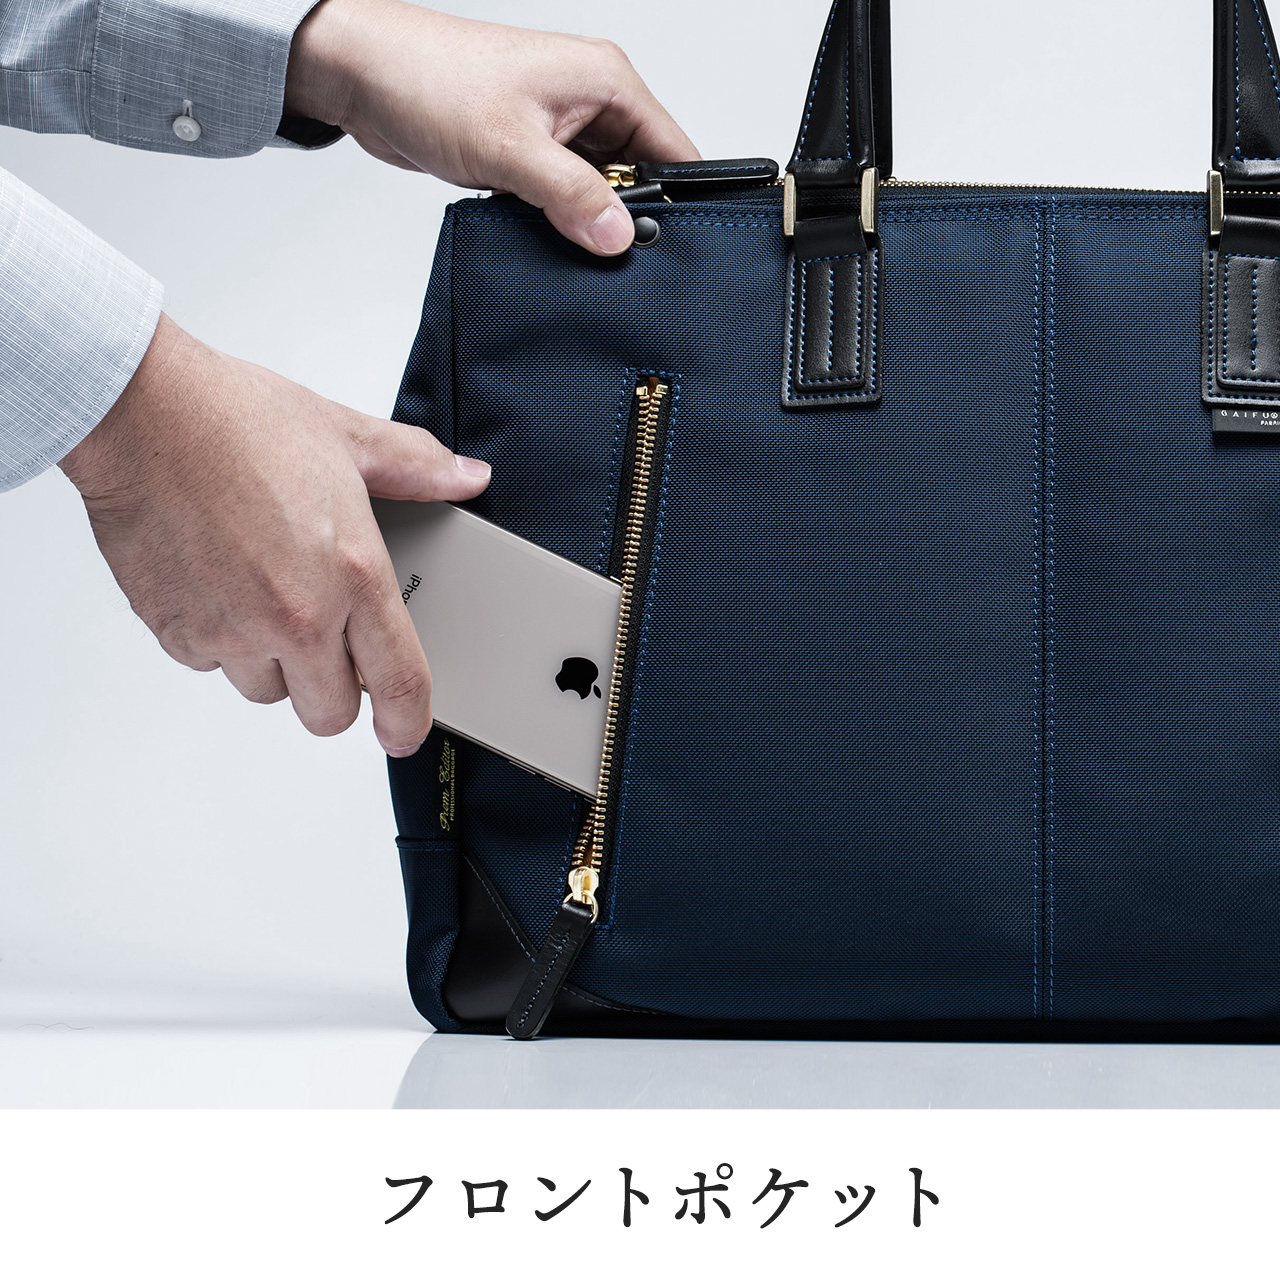 日本製ビジネスバッグ（豊岡縫製・国産素材鎧布使用・2WAY・高強度 